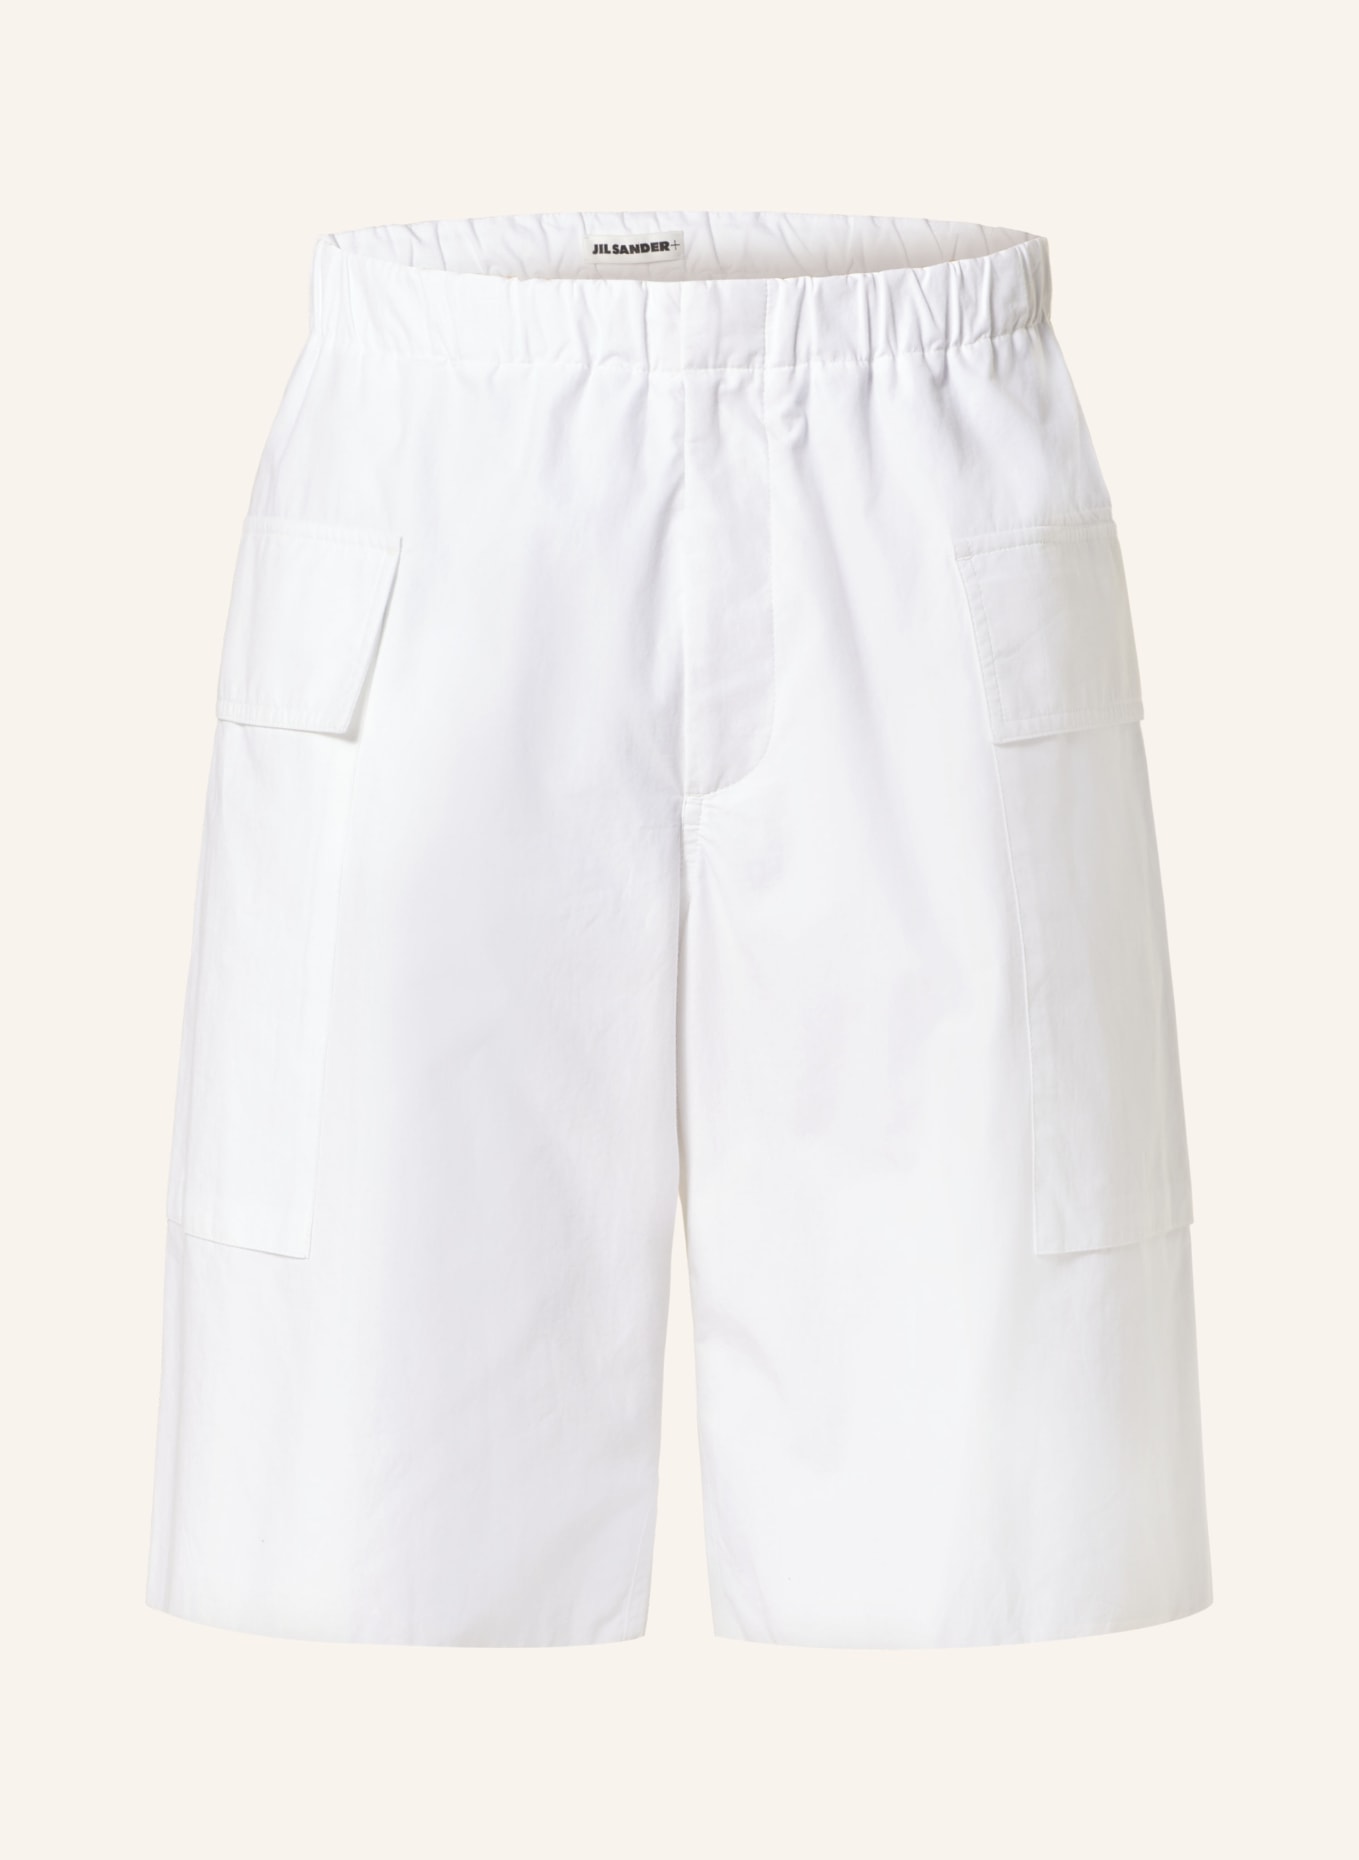 JIL SANDER Cargo shorts, Color: WHITE (Image 1)